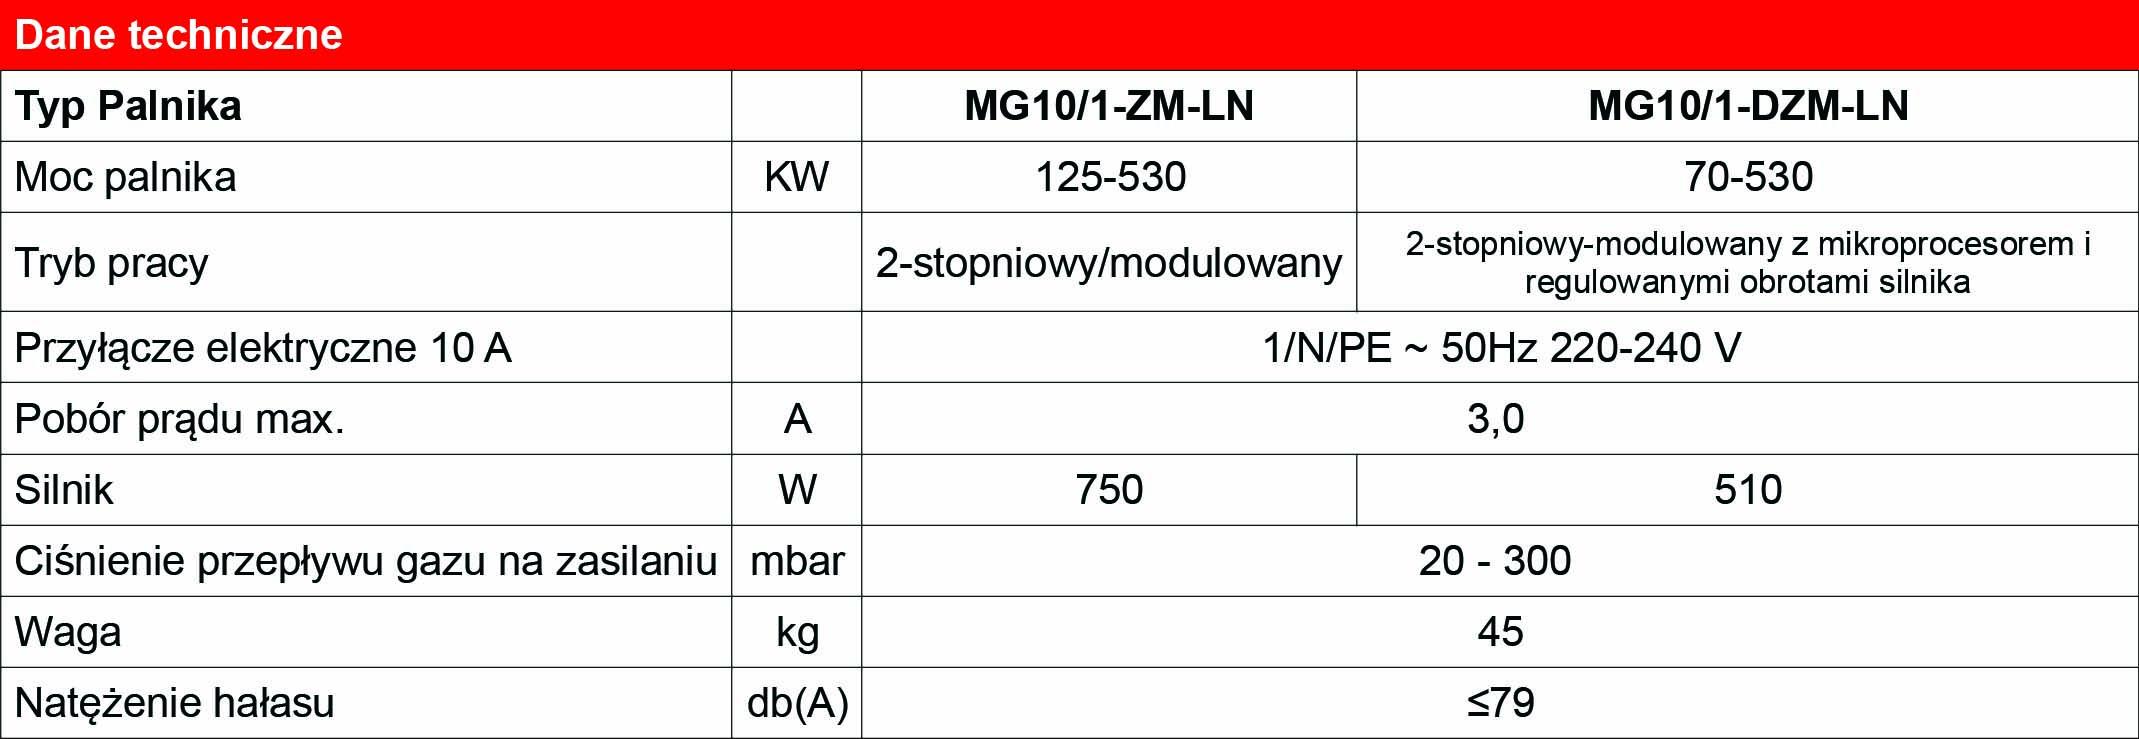 dane_techniczne_MG10_2-ZM-LN